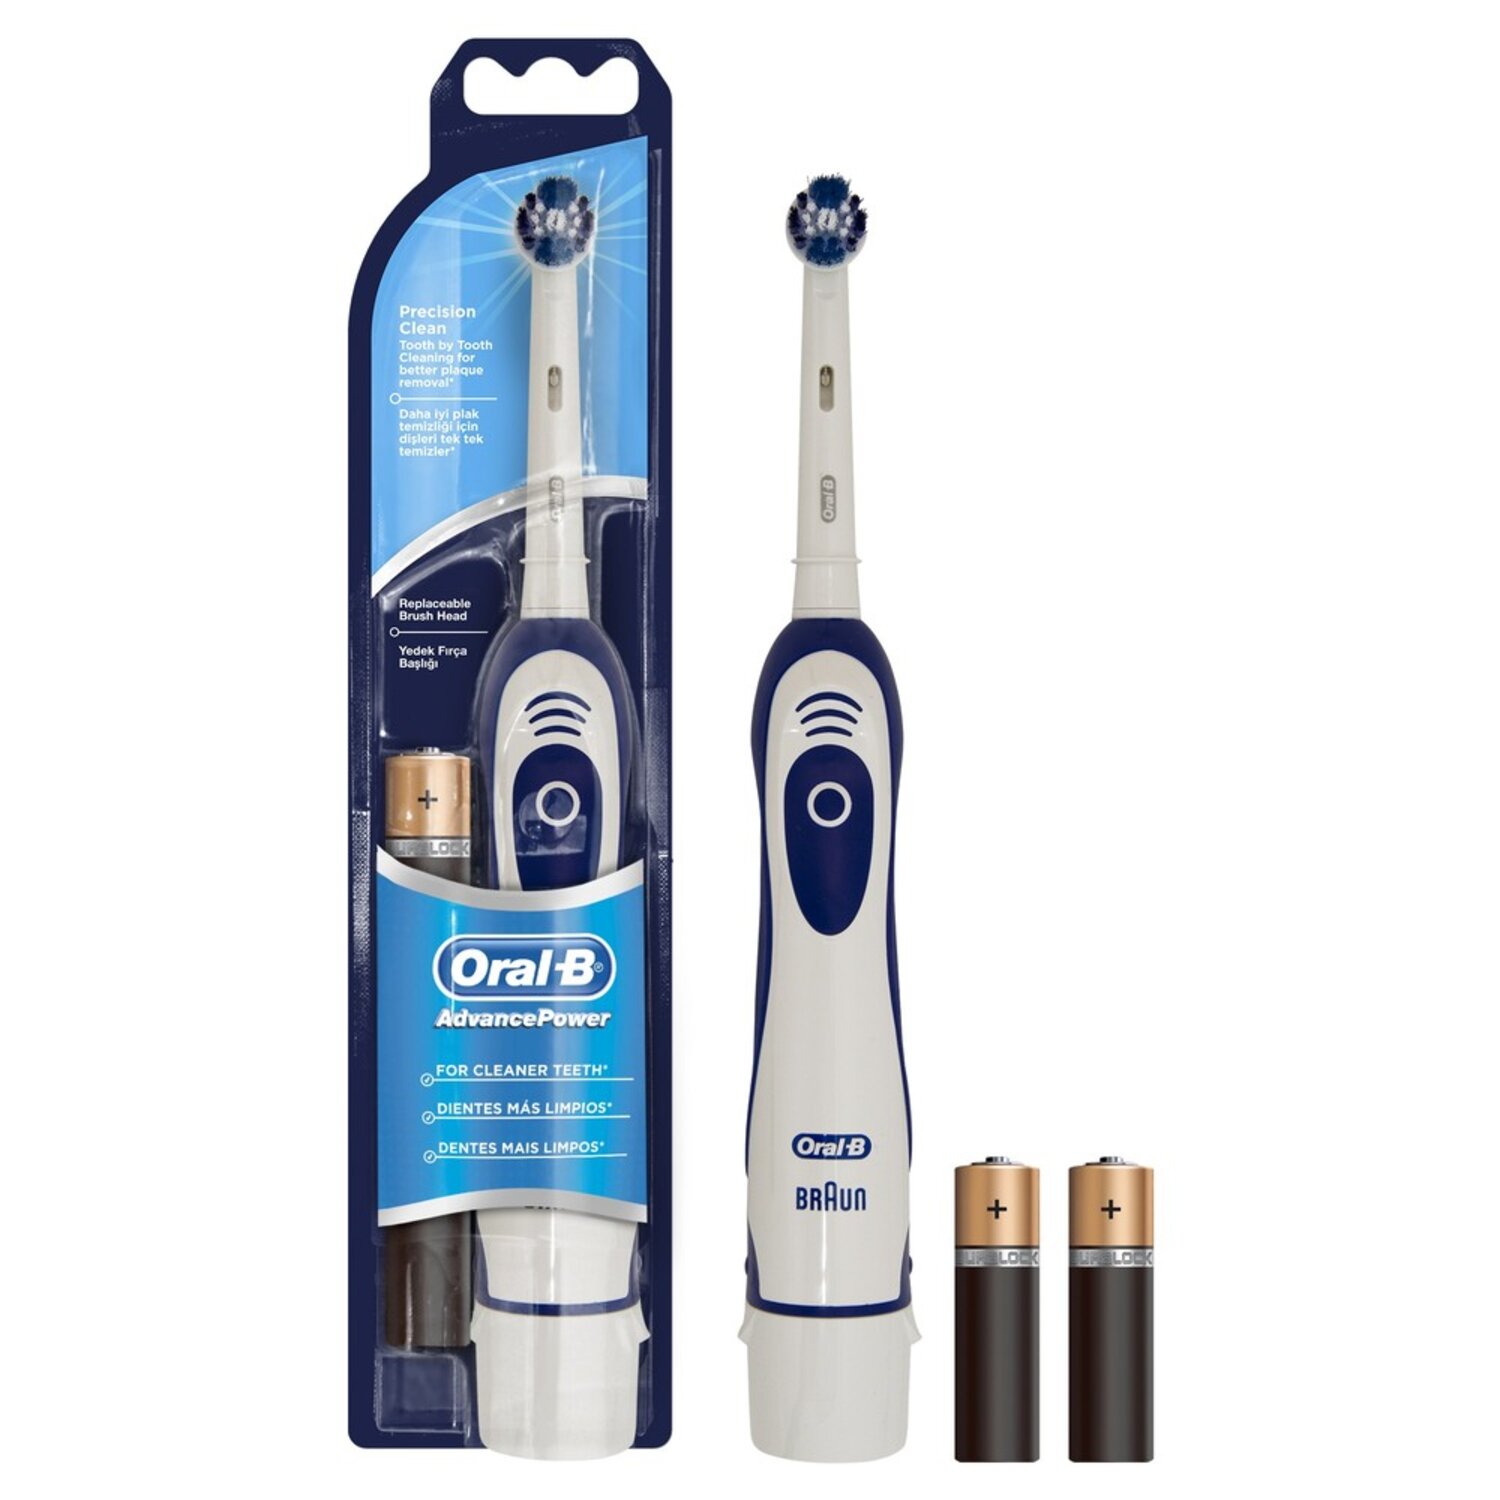 Орал-Б щетка зубная DB4 электрическая с батарейкой, PROCTER & GAMBLE  - купить